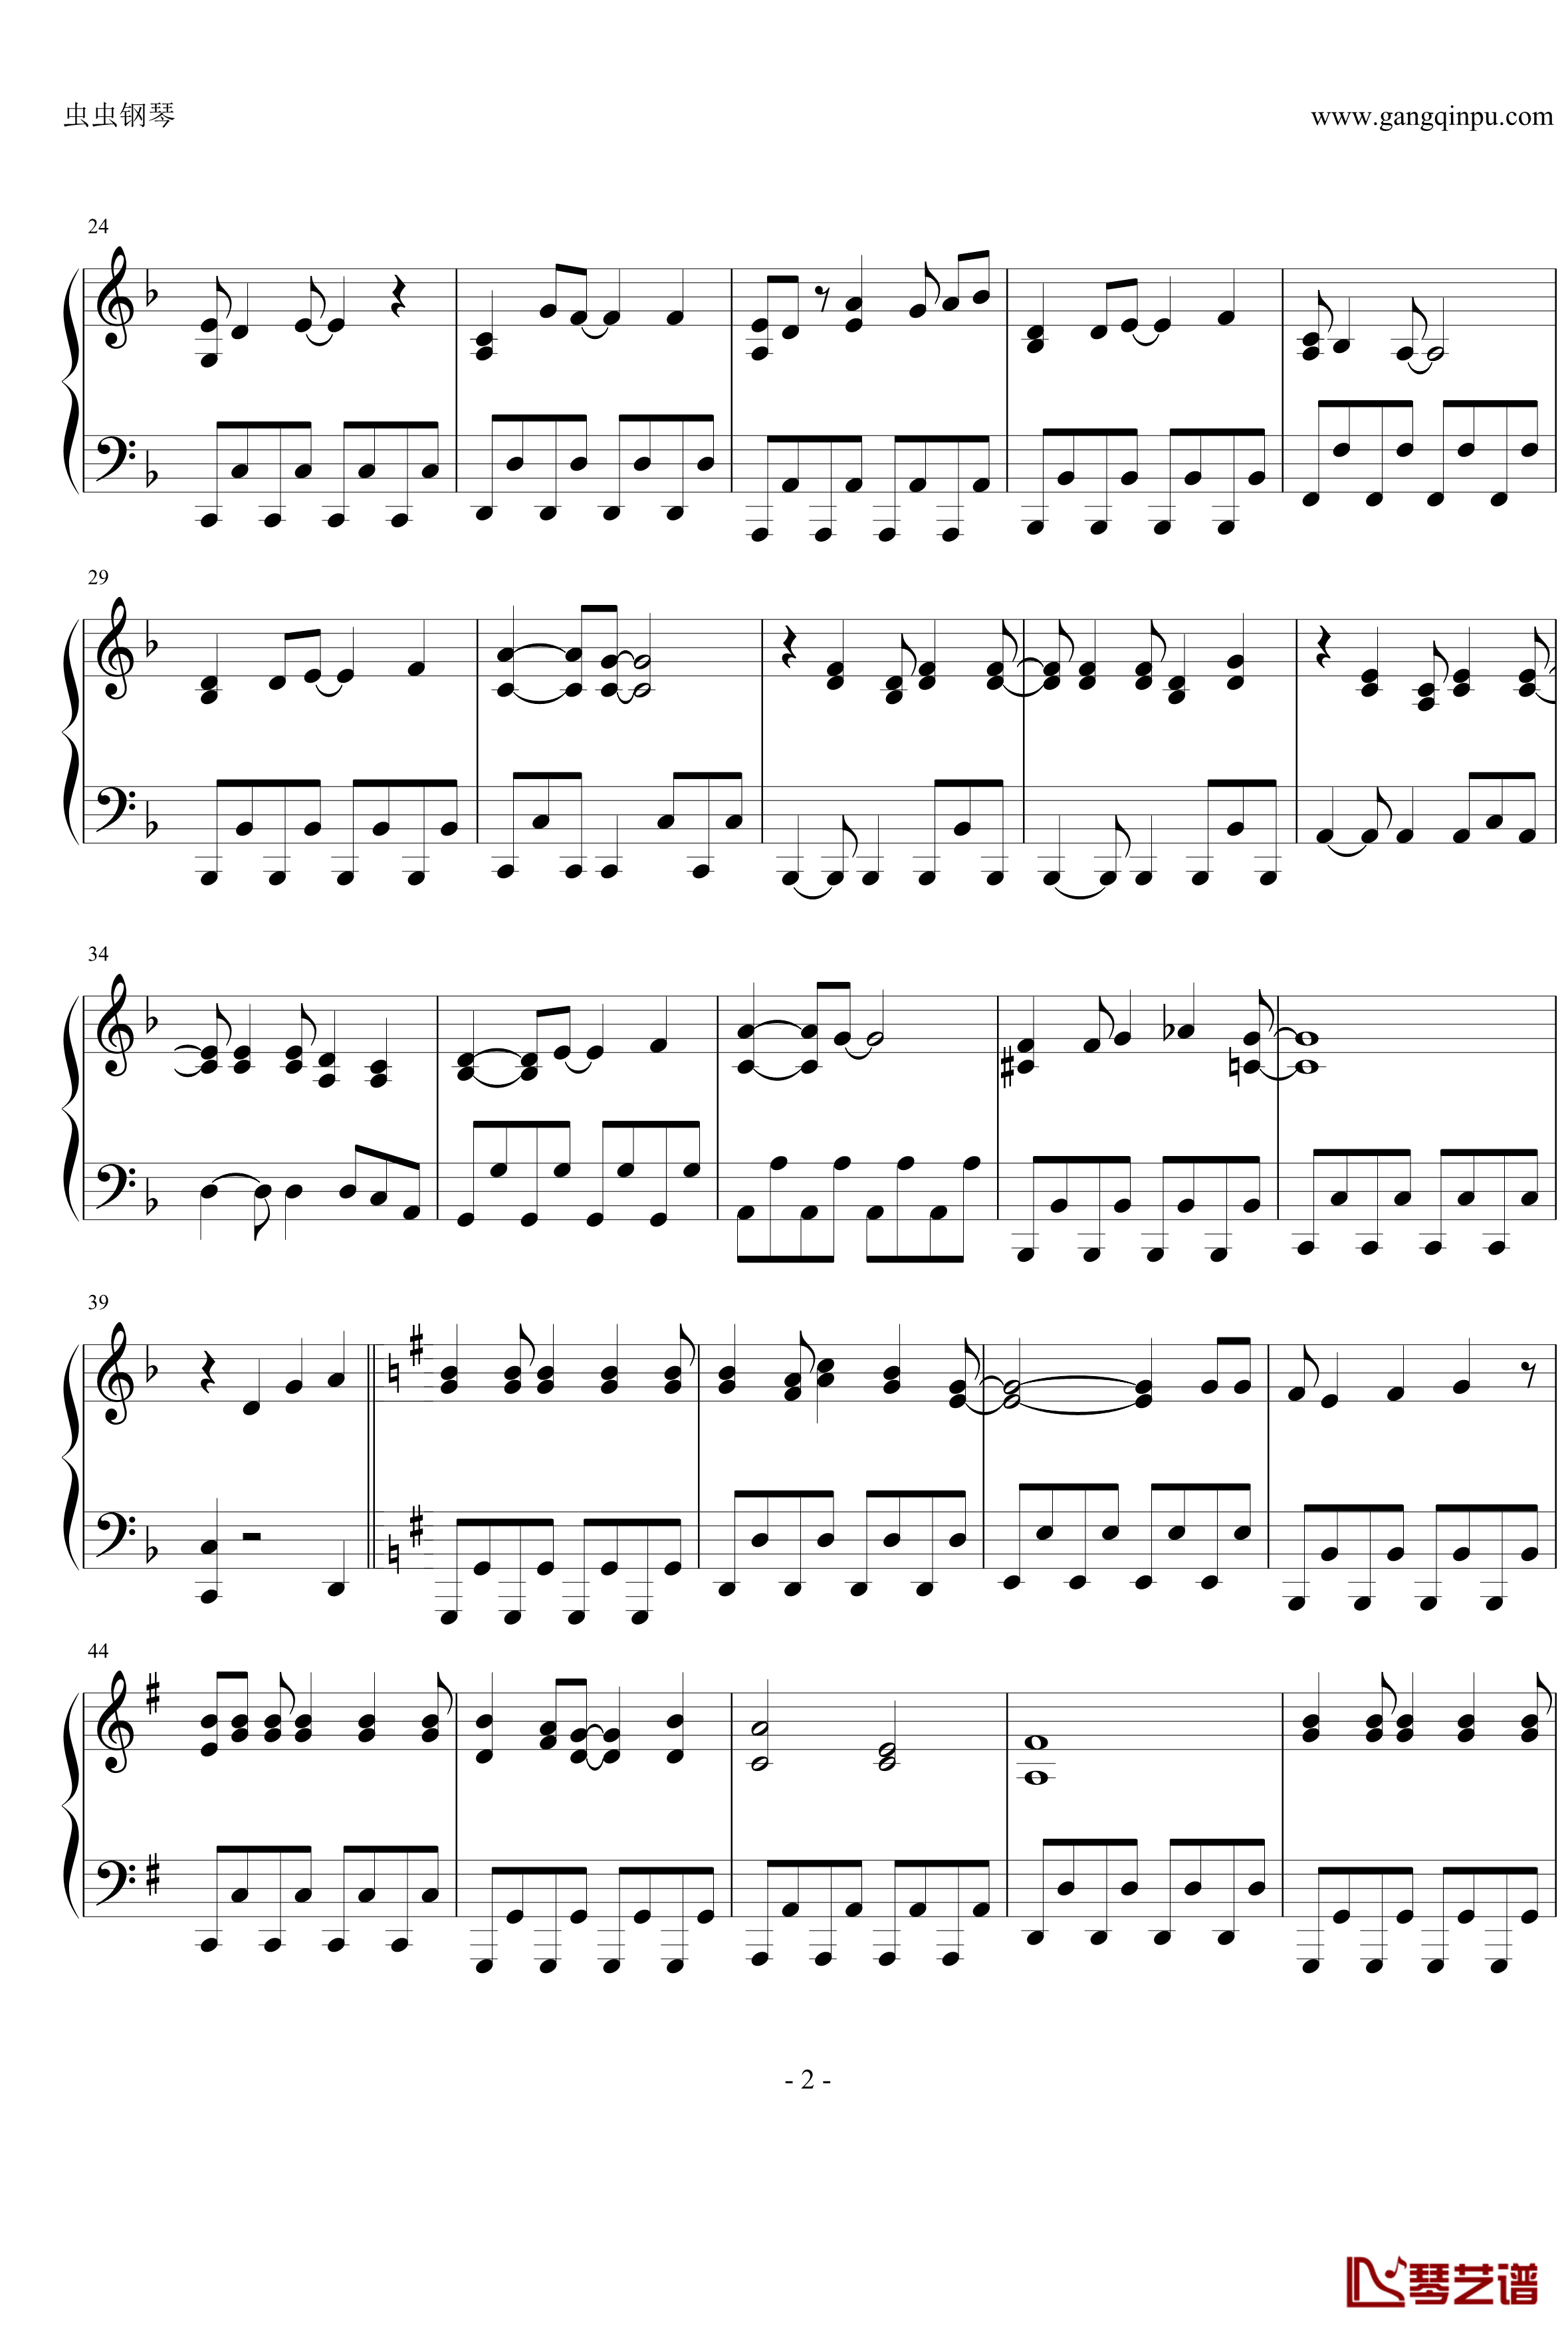 オーマイガー钢琴谱-修订完善版-NMB482